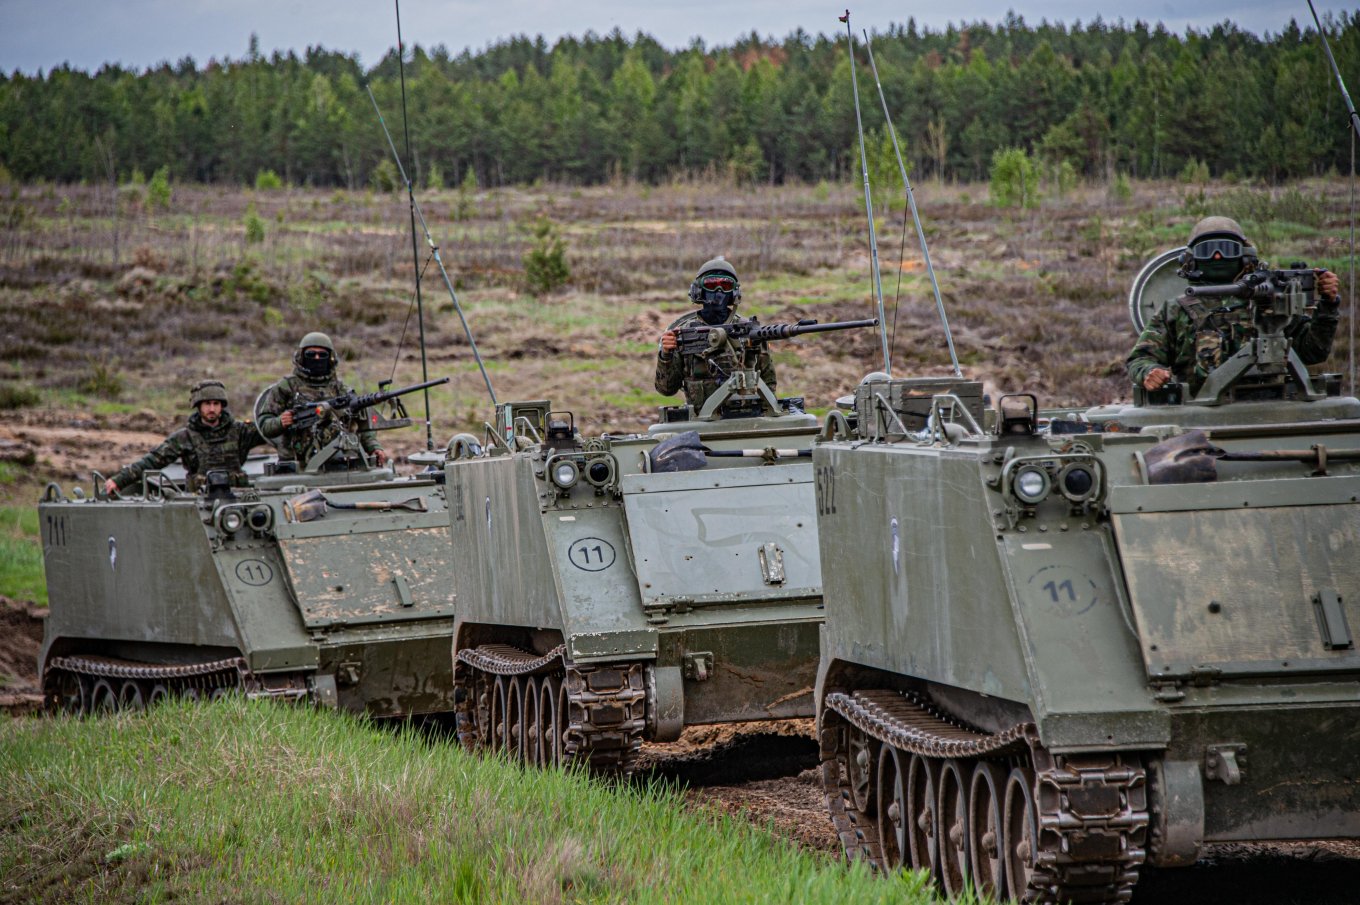 Іспанські військові на бронетранспортерах M113 під час навчань НАТО в Латвії, травень 2022 року, фото з відкритих джерел